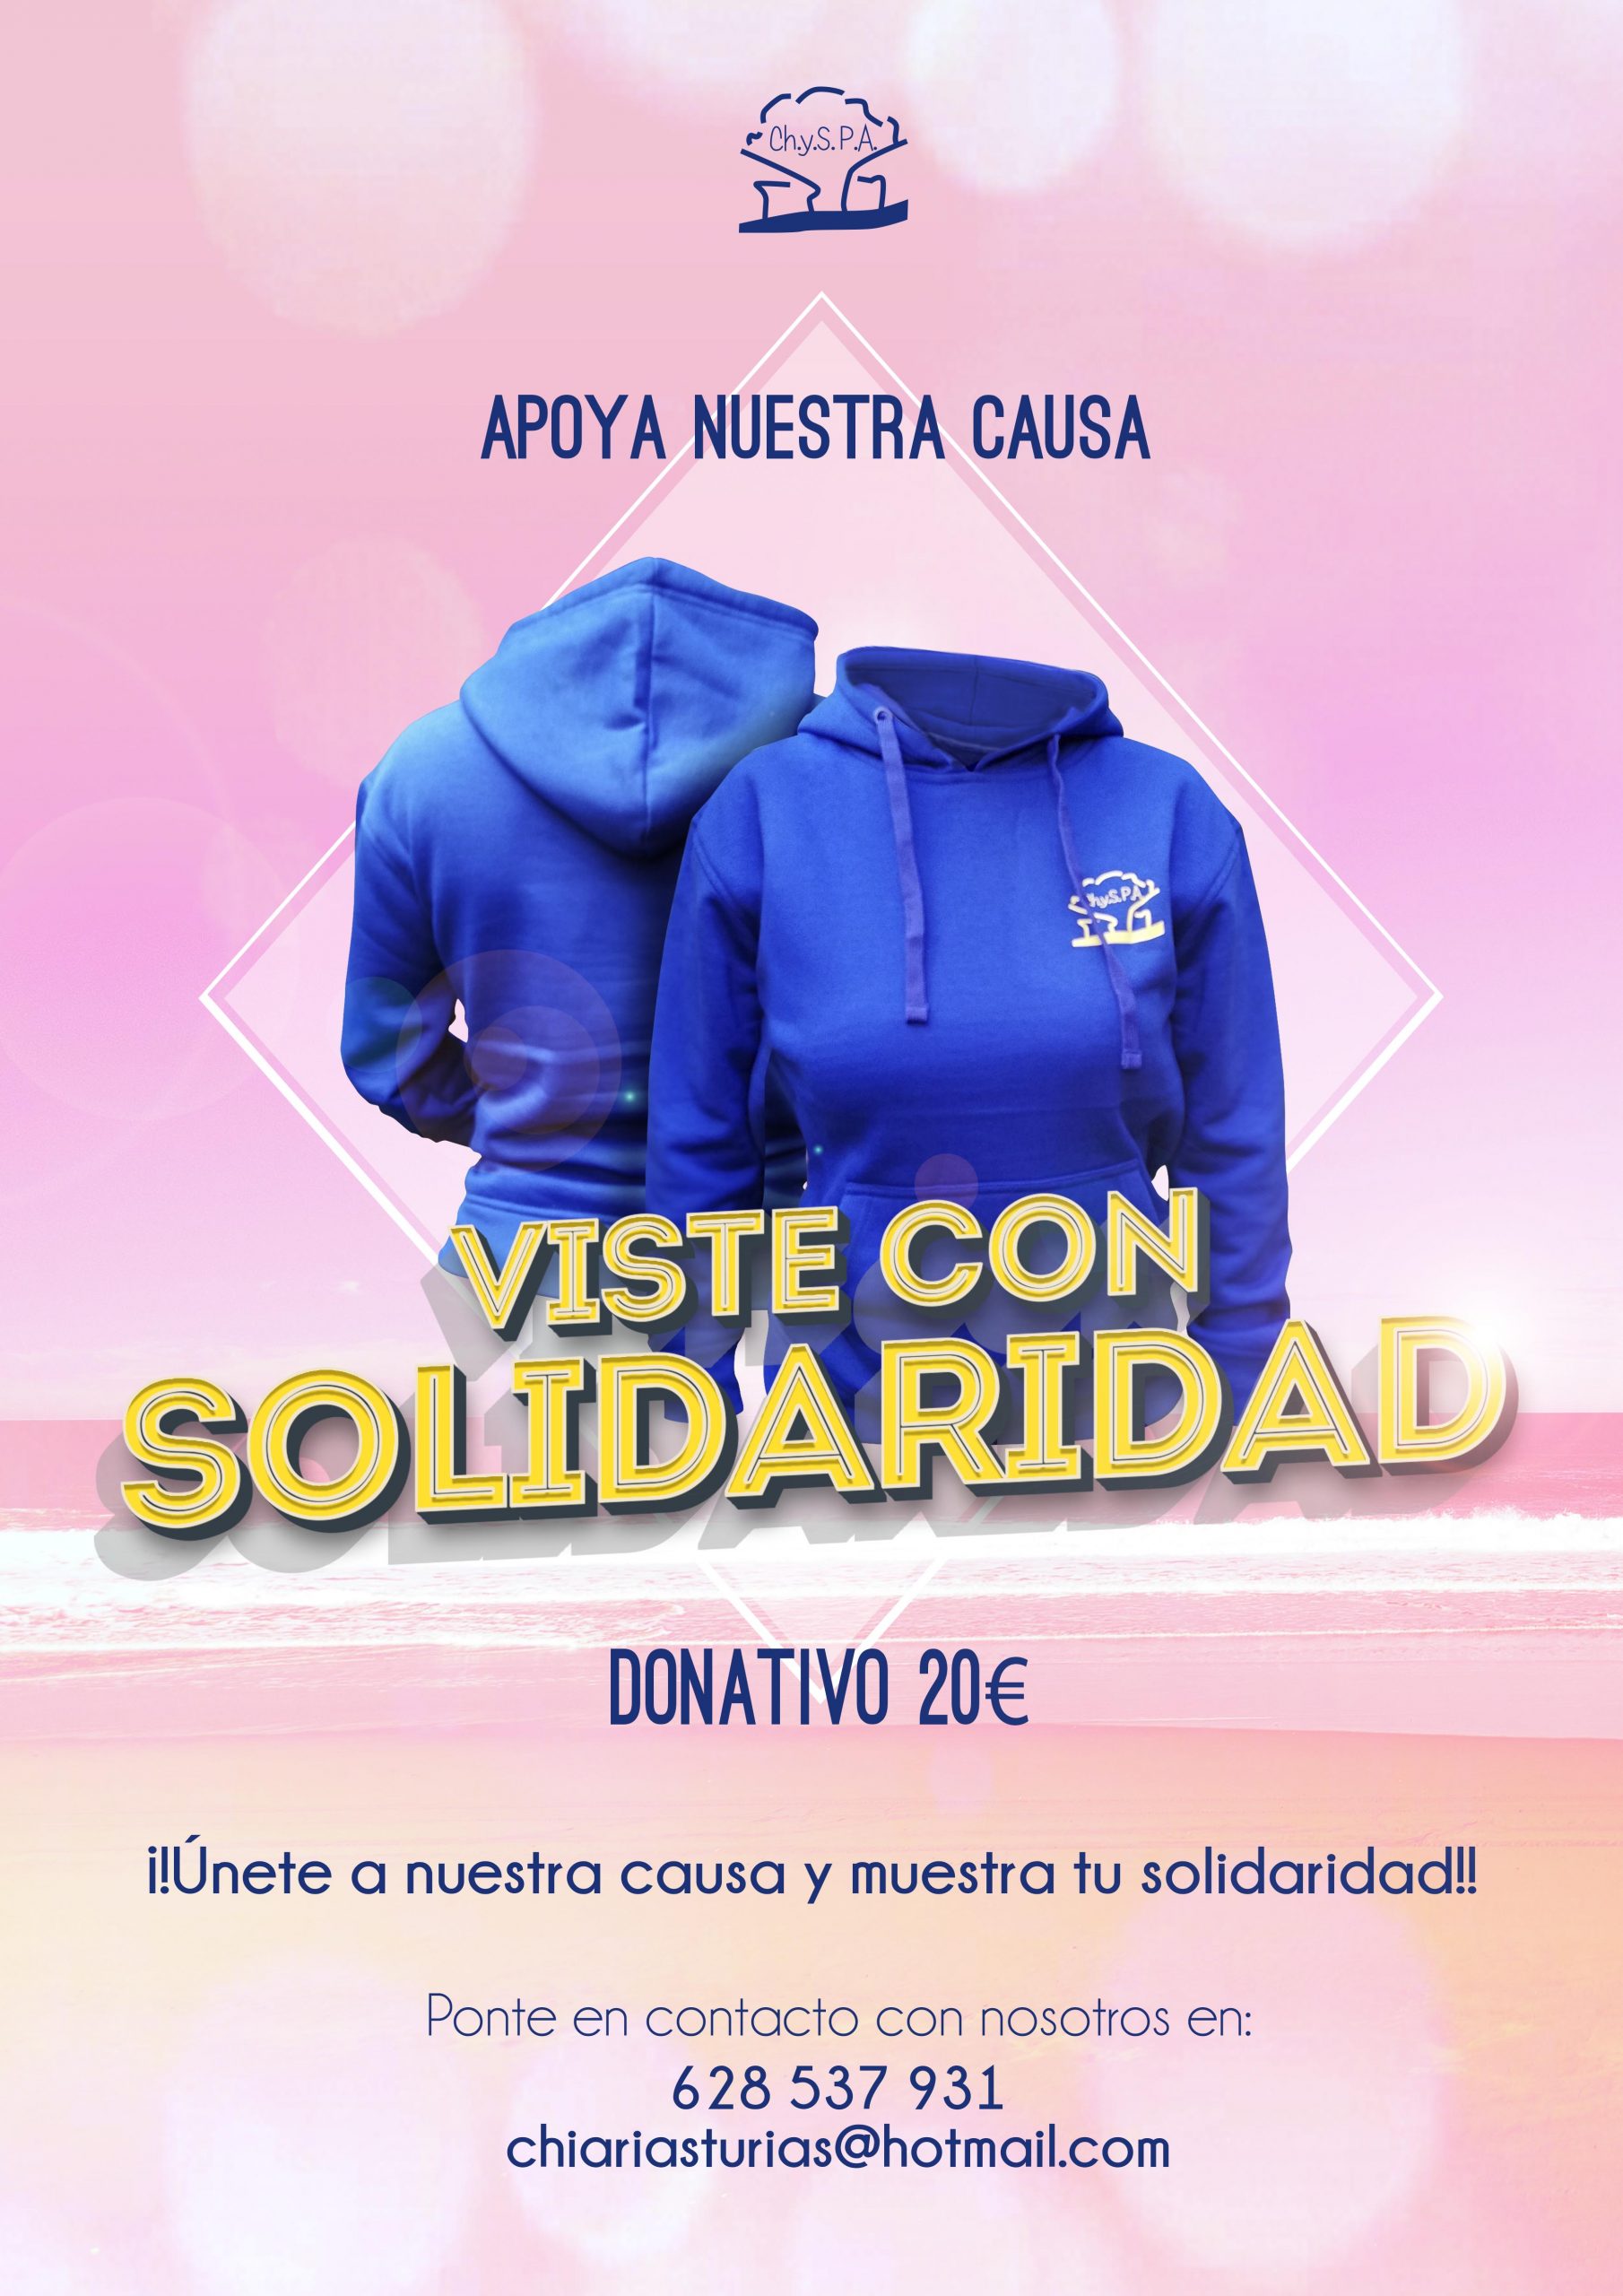 Apoya nuestra causa y viste con solidaridad, Adquiere una sudadera ChySPA, donativo 20€ ¡!Únete a nuestra causa y muestra tu solidaridad!!